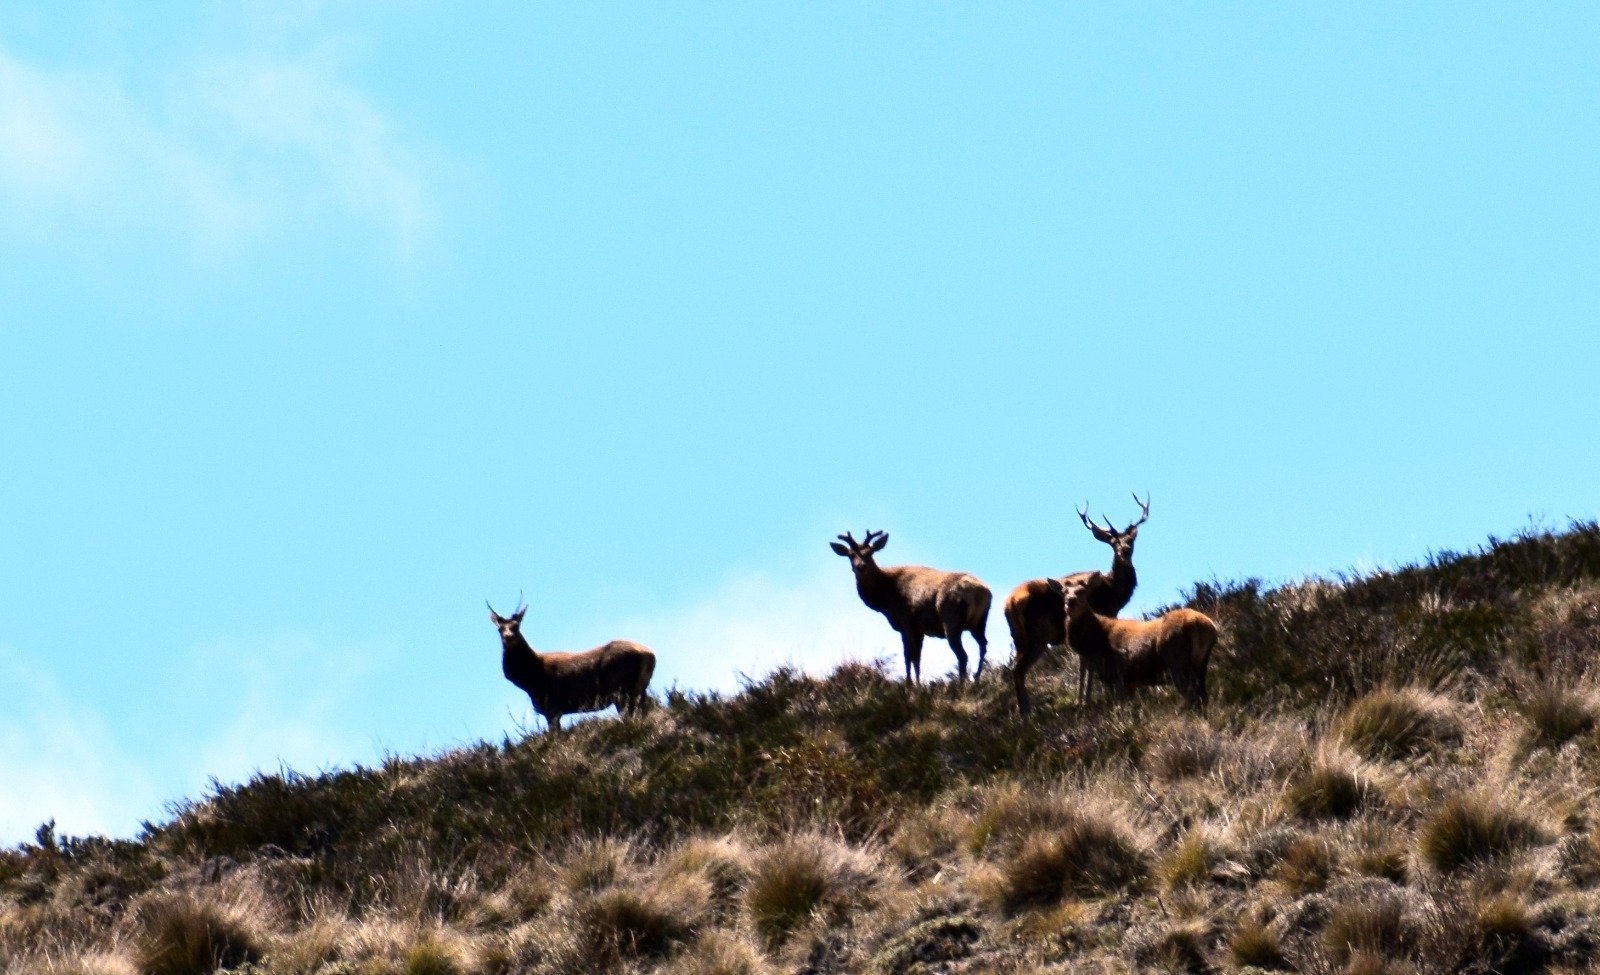 La actividad de caza pretende controlar la población de ciervos colorados. Foto: gentileza